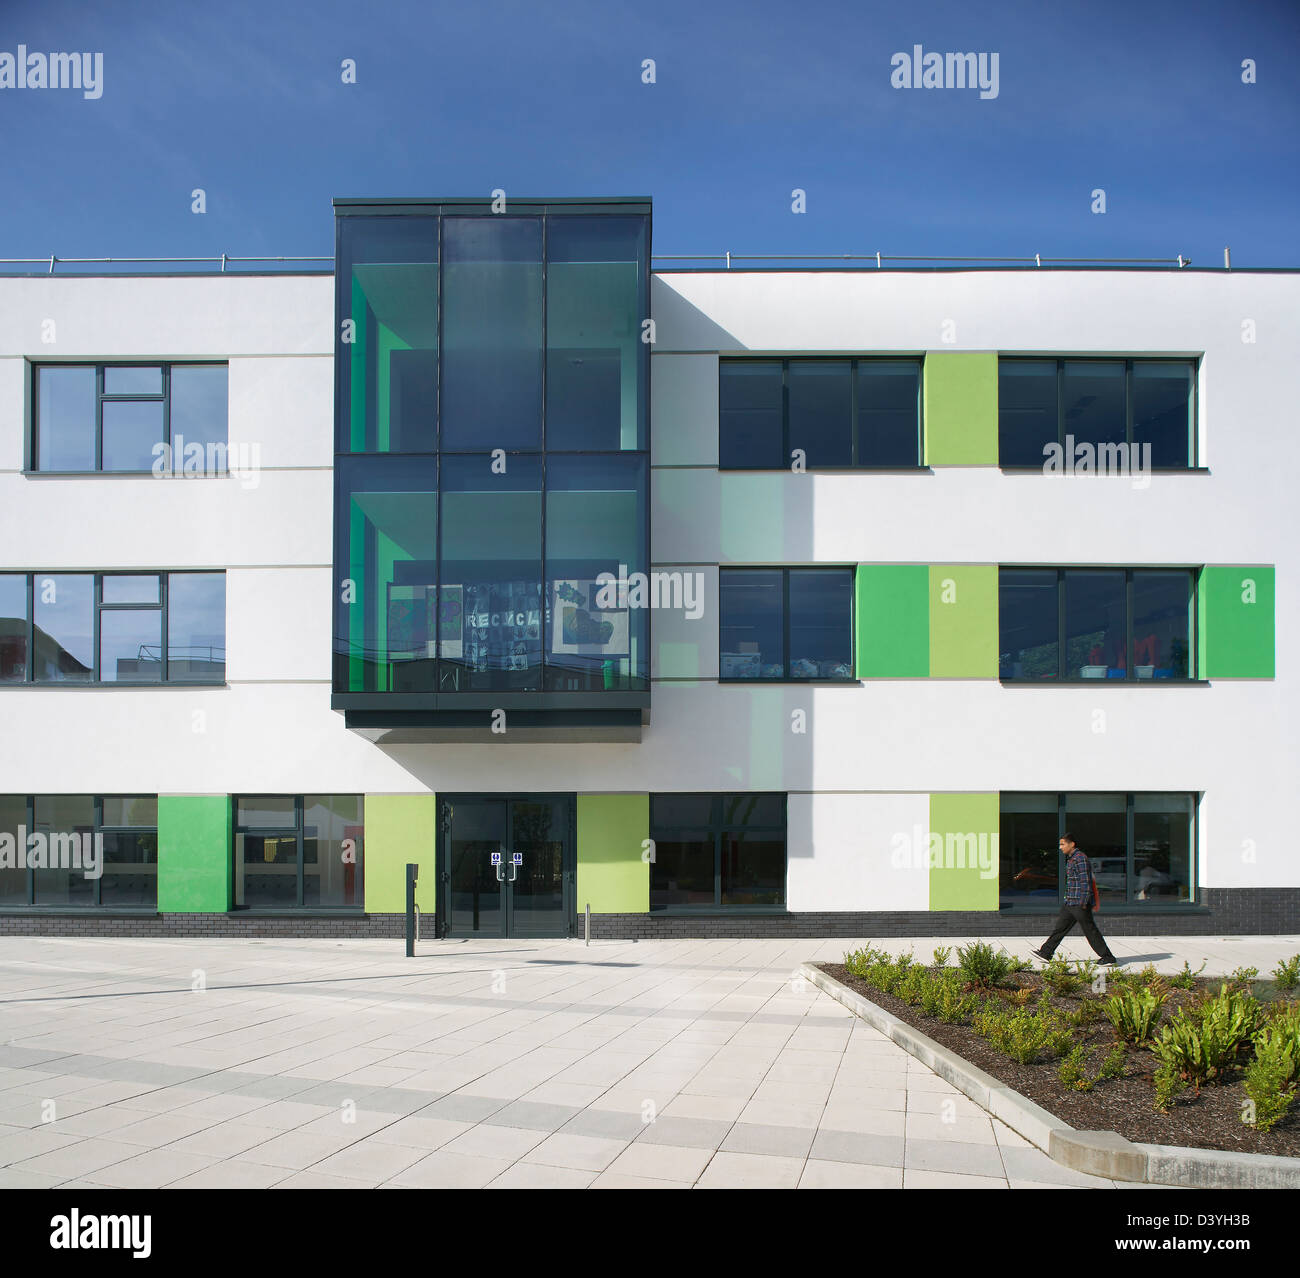 Oasis Academy, Coulsdon, Royaume-Uni. Architecte : Sheppard Robson, 2011. Détail façade vitrée avec baie vitrée. Banque D'Images